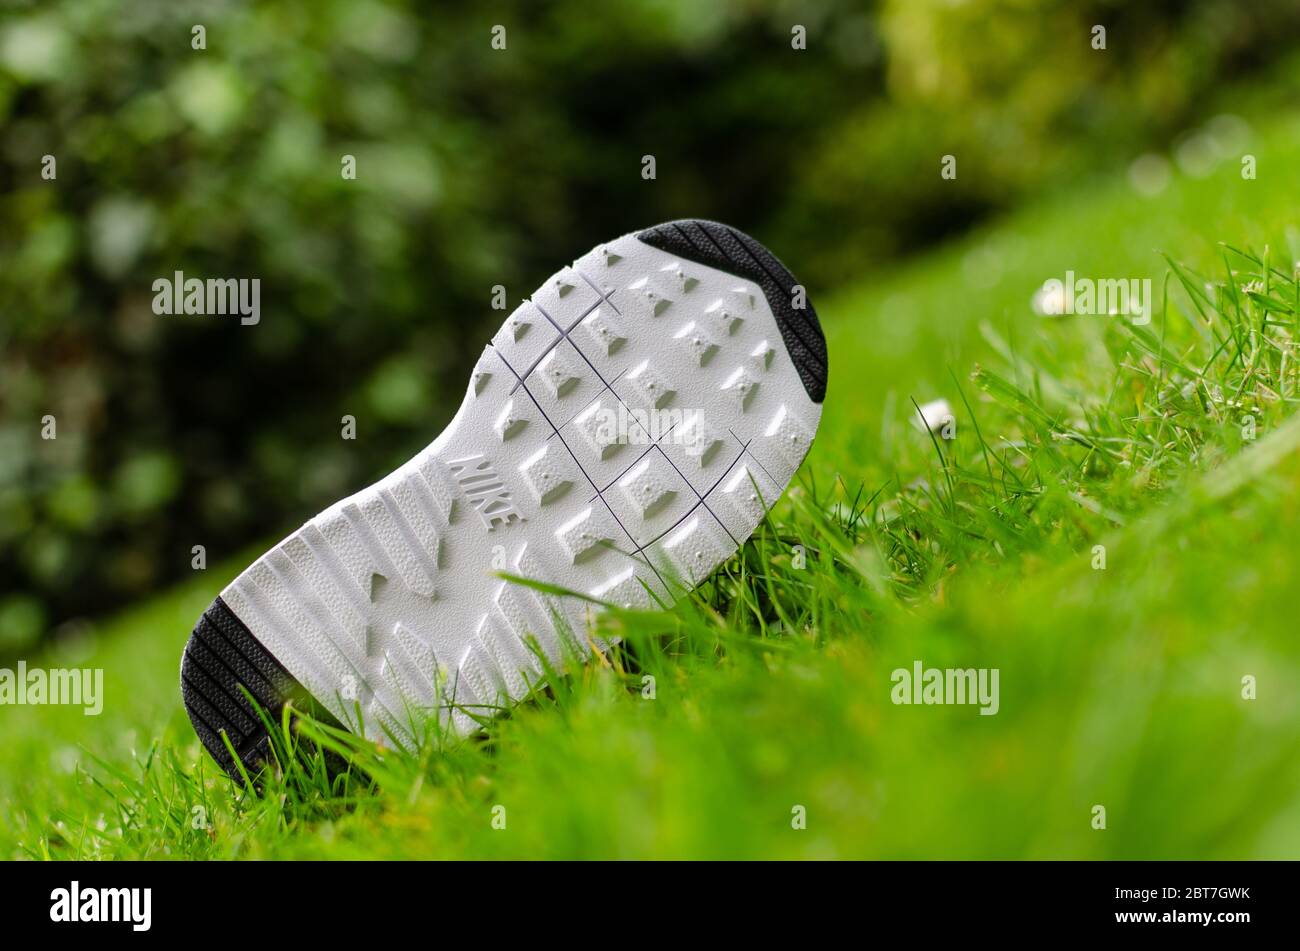 Das Nahaufnahme Foto der Air Nike Trainingssohle für Kinder auf dem lebhaften Gras. Für die Bildgebung wurde ein flaches Sichtfeld verwendet. Stockfoto